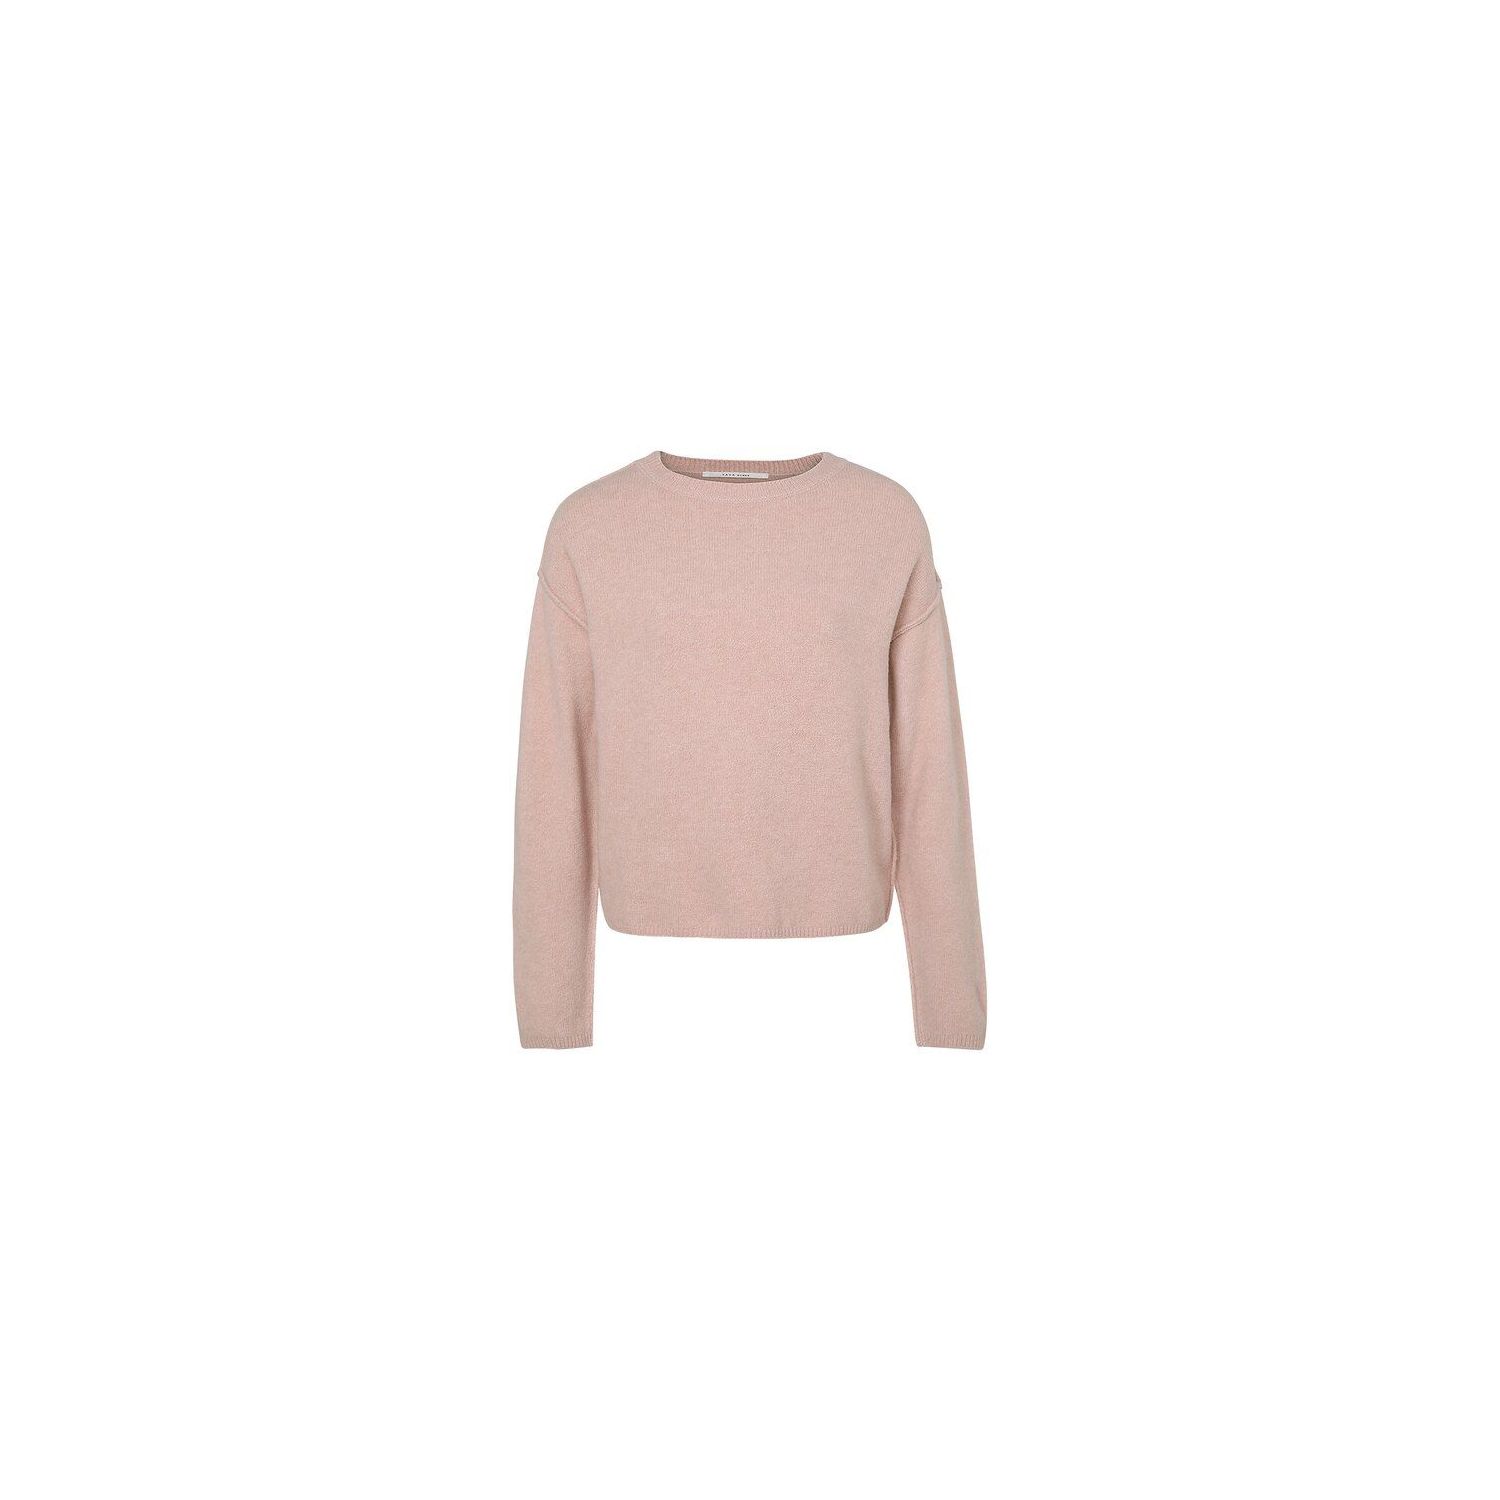 Yaya cropped sweater adobe rose pink